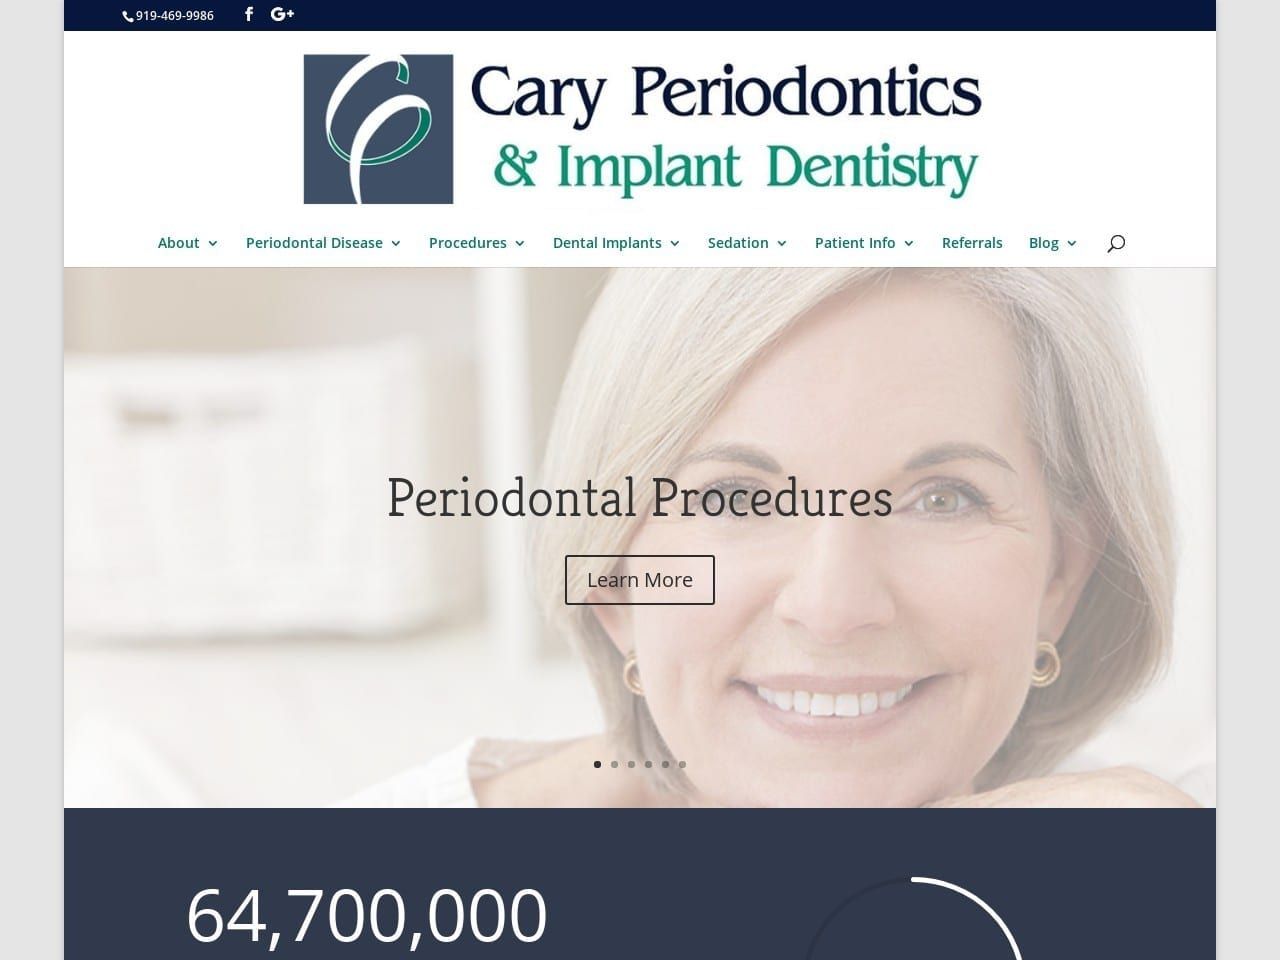 Cary Periodontics Website Screenshot from caryperio.com